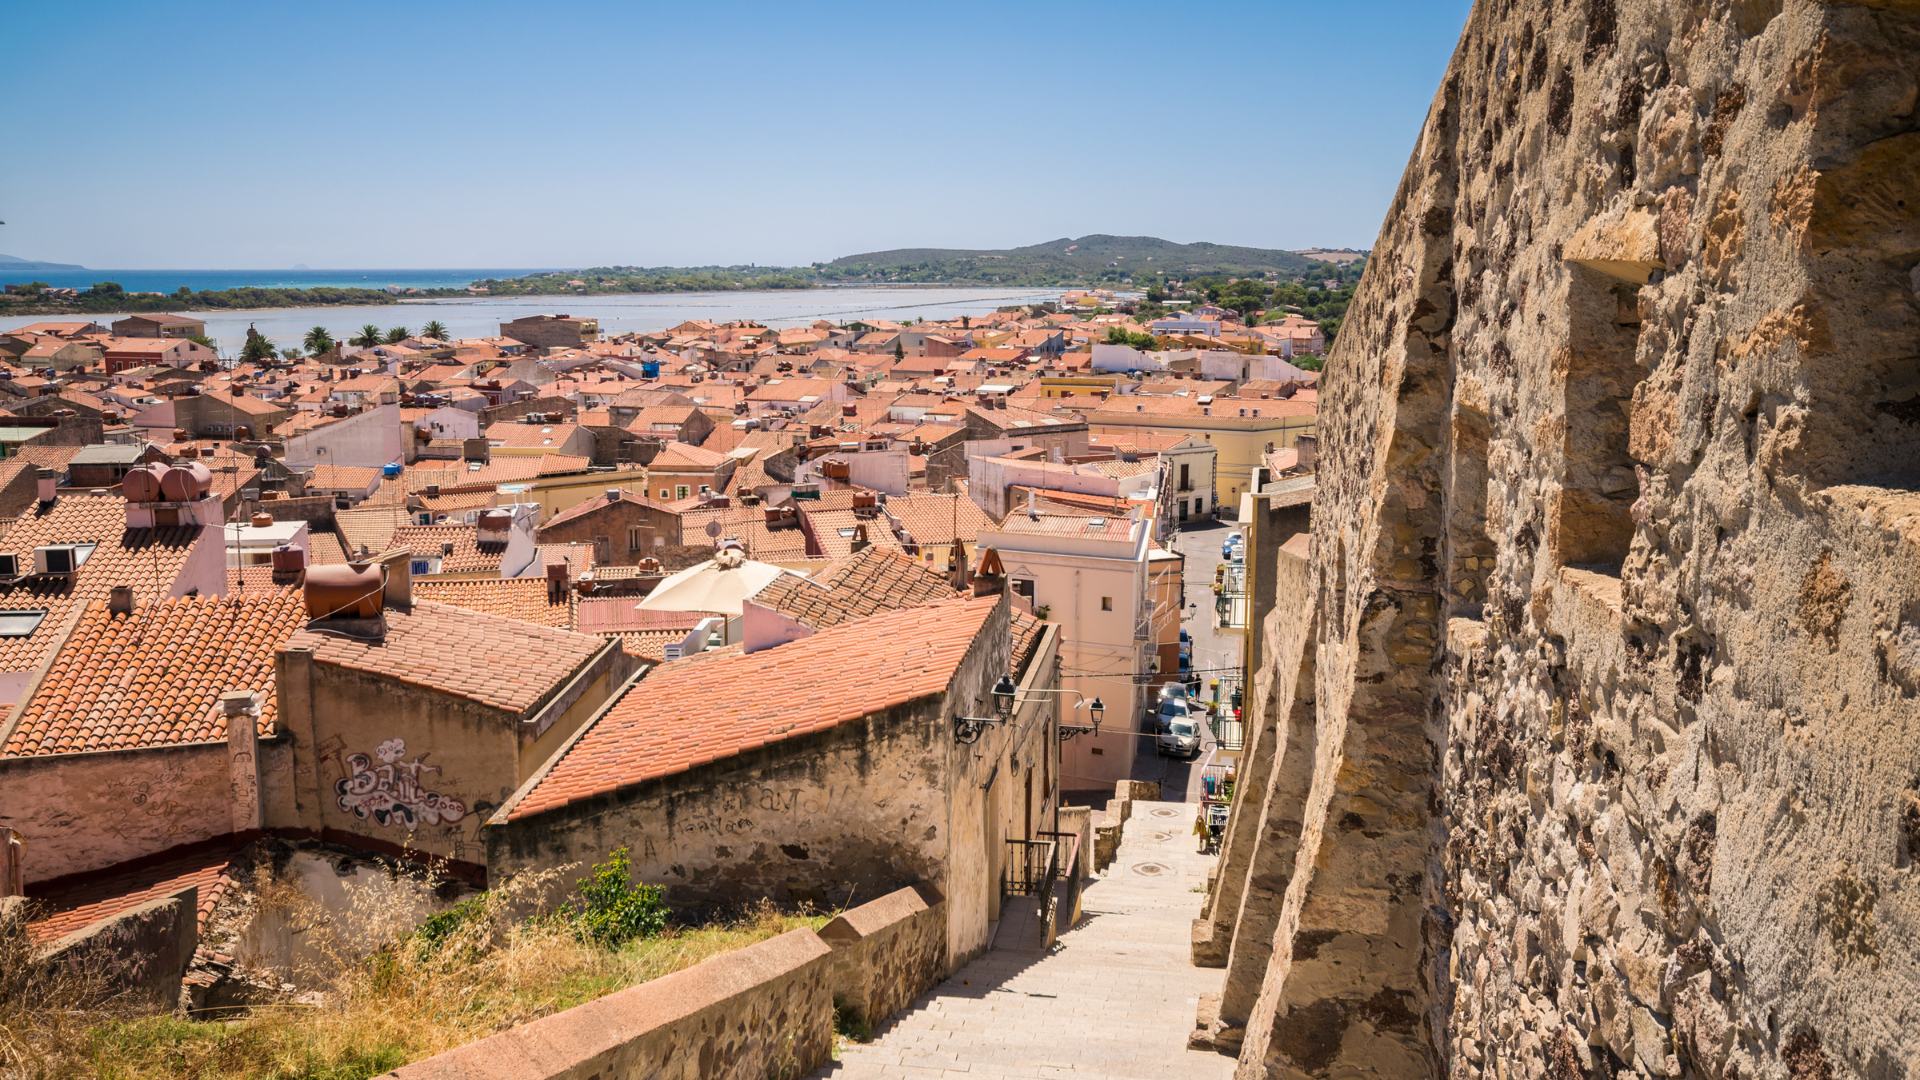 Borghi più belli della Sardegna: Carloforte vista dalla parte alta della città